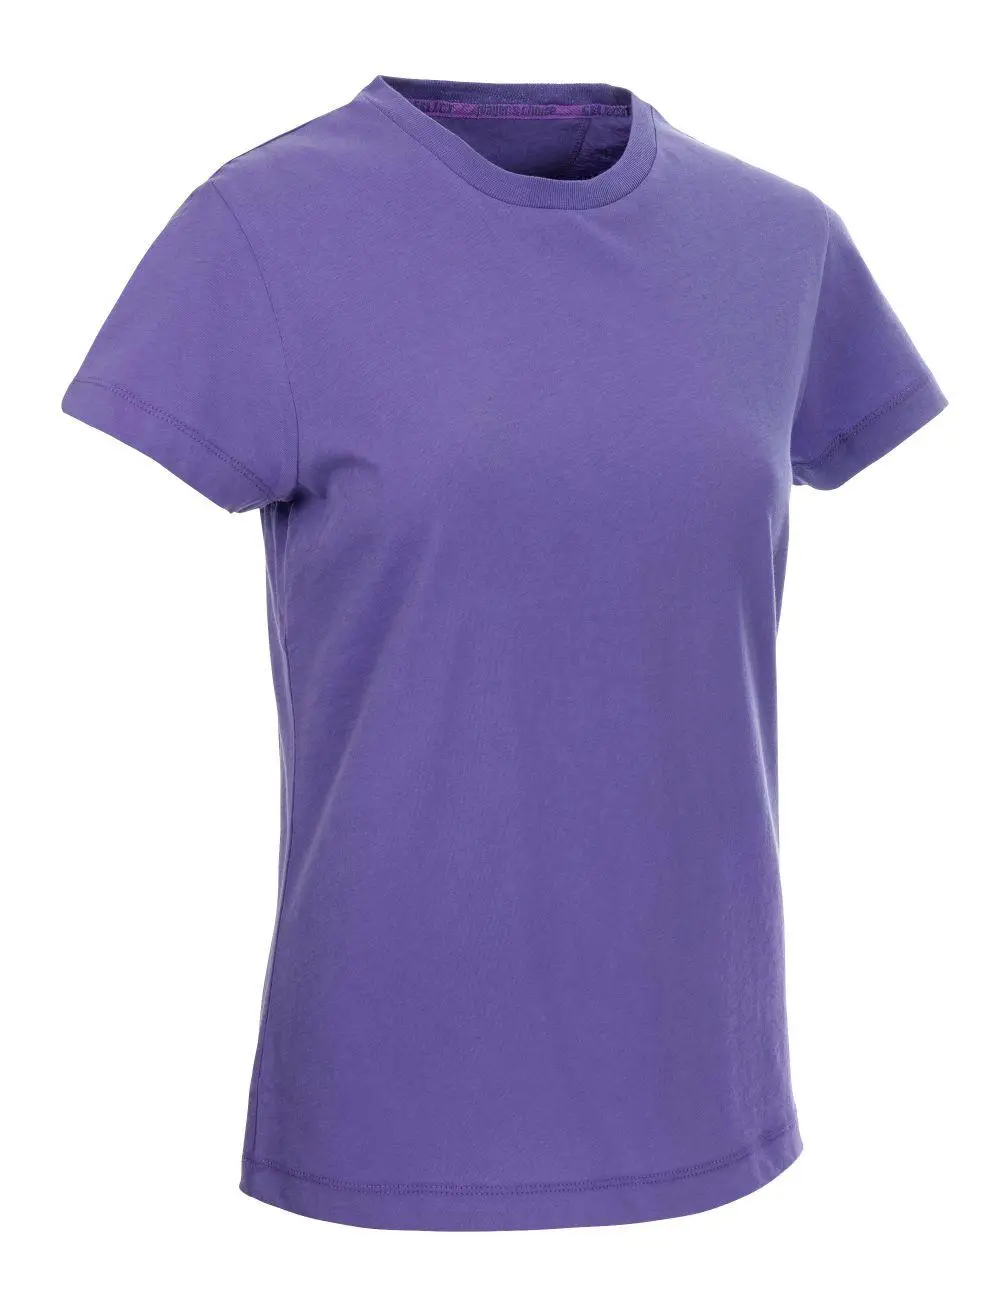 Футболка SELECT Wilma t-shirt women  пурпурний, XXXL фото товару